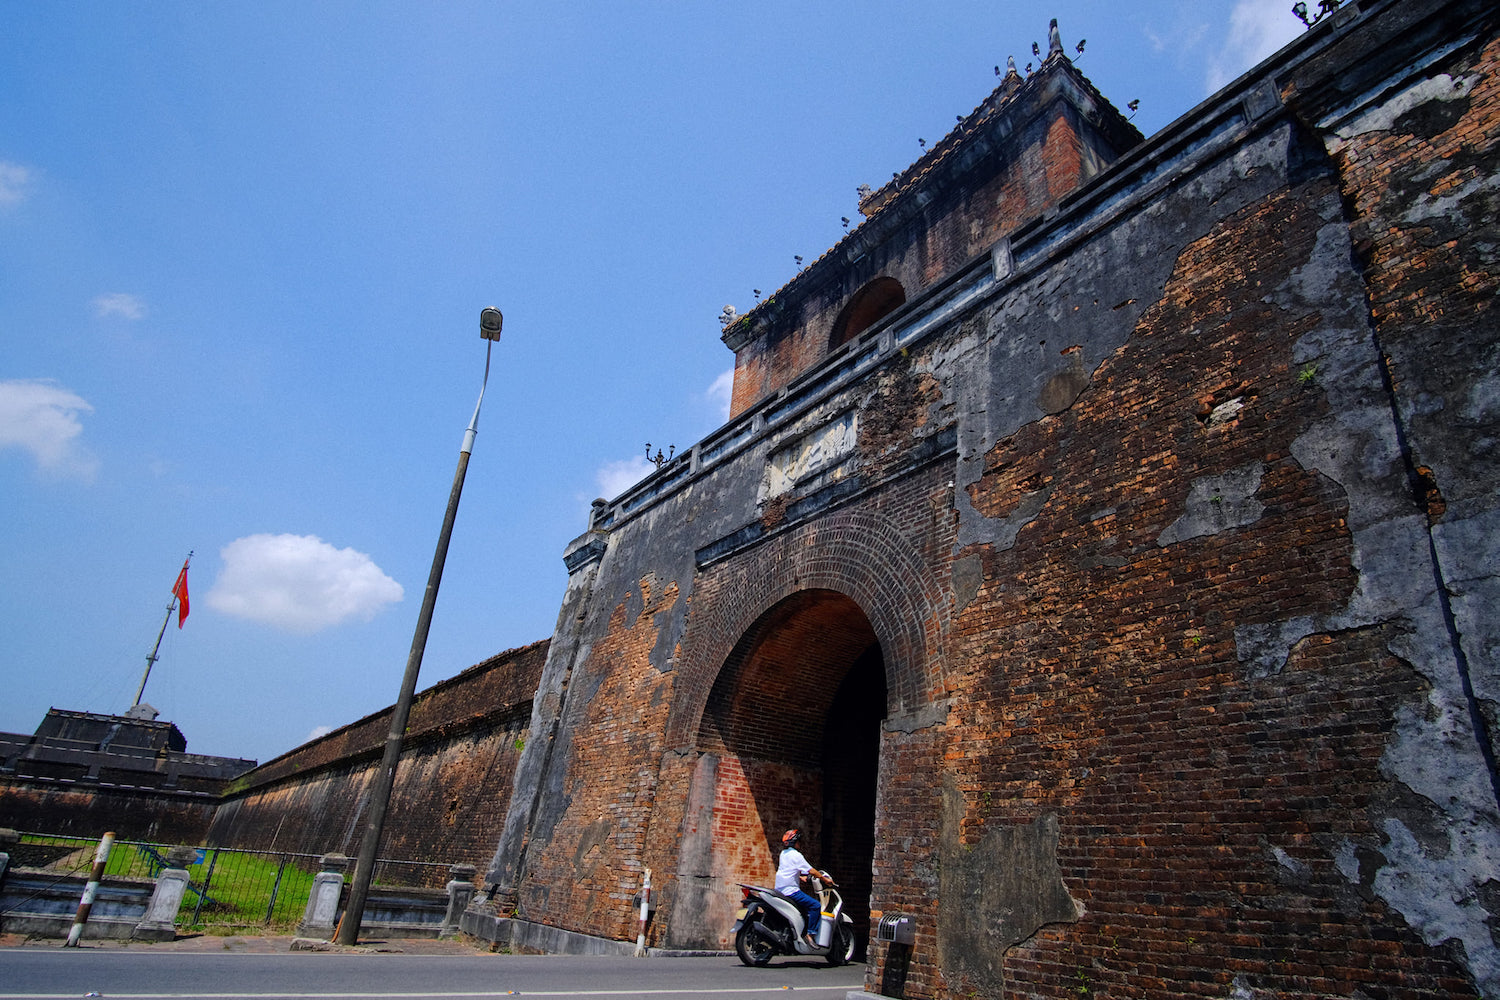 Kinh thành Huế - Chiêm ngưỡng kiến trúc vàng son của 13 vị vua triều đại nhà Nguyễn 20